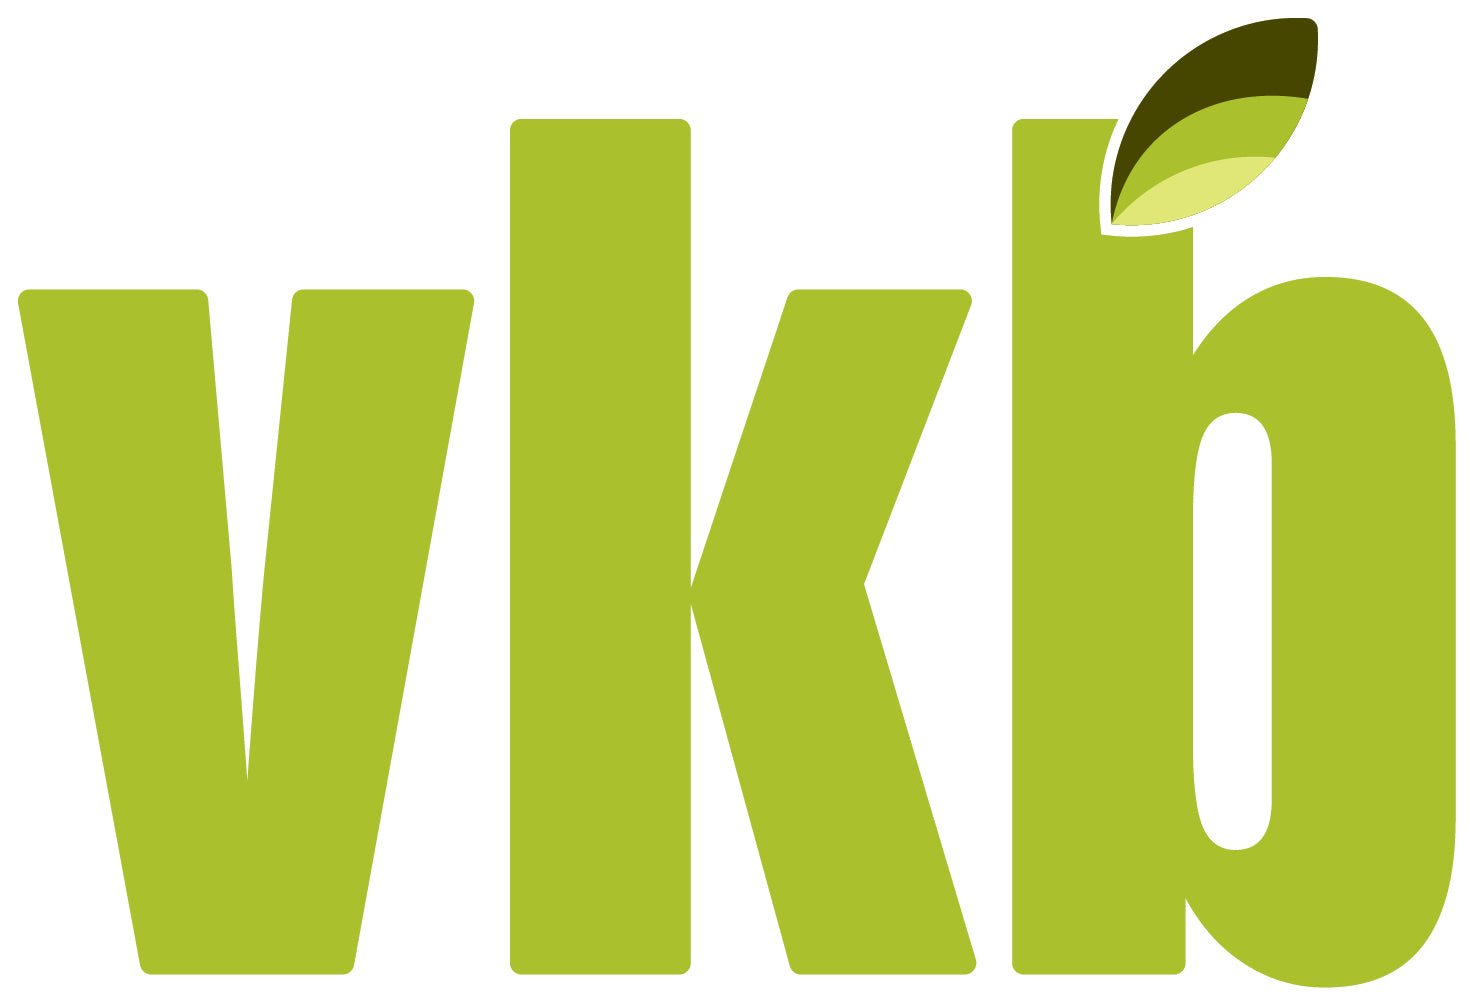 VKB Logo